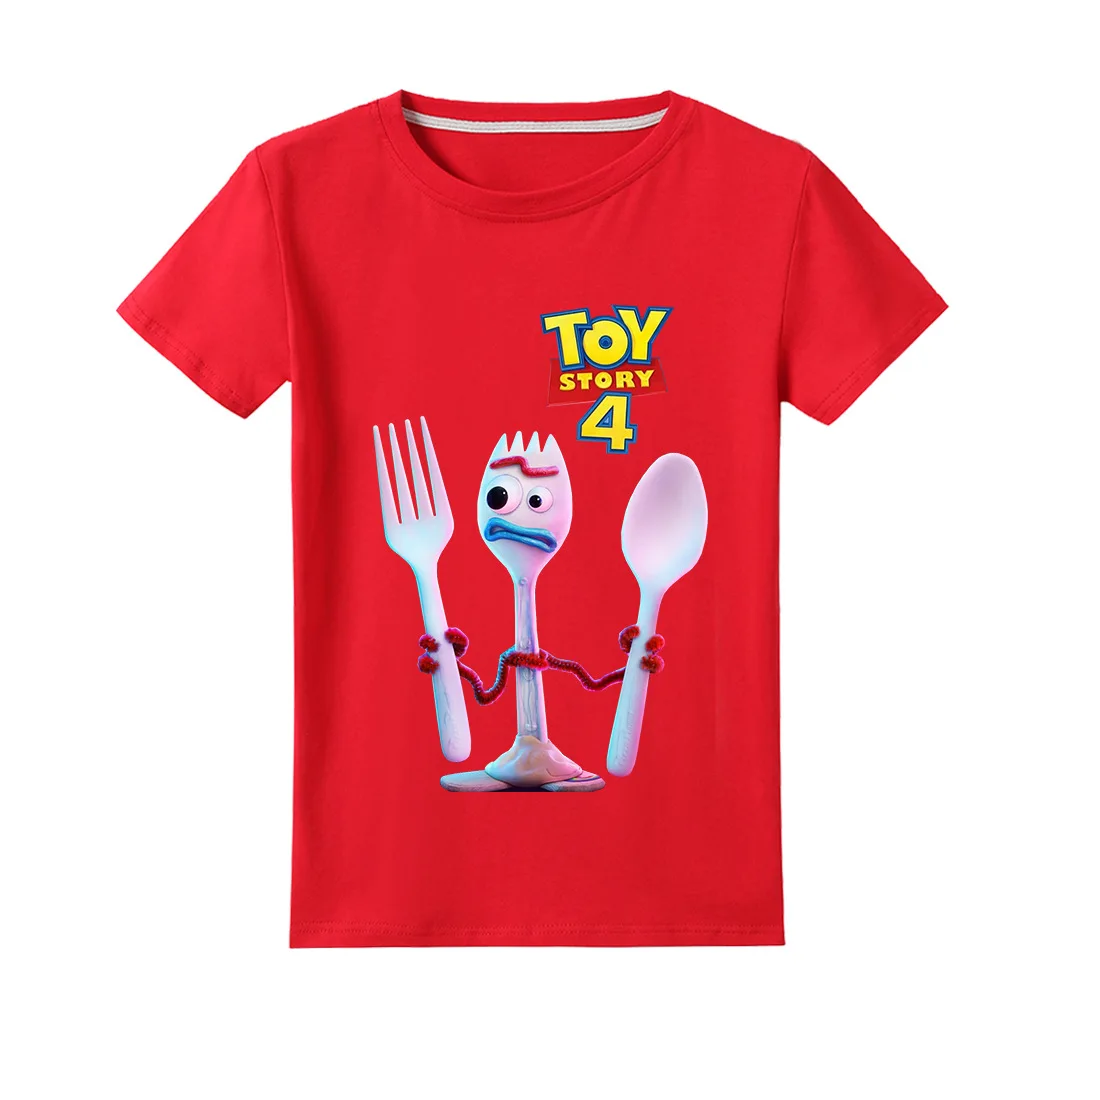 Новая детская футболка из 100% хлопка с героями мультфильма «История игрушек» Детская футболка из хлопка летняя одежда Базз Лайтер/Вуди